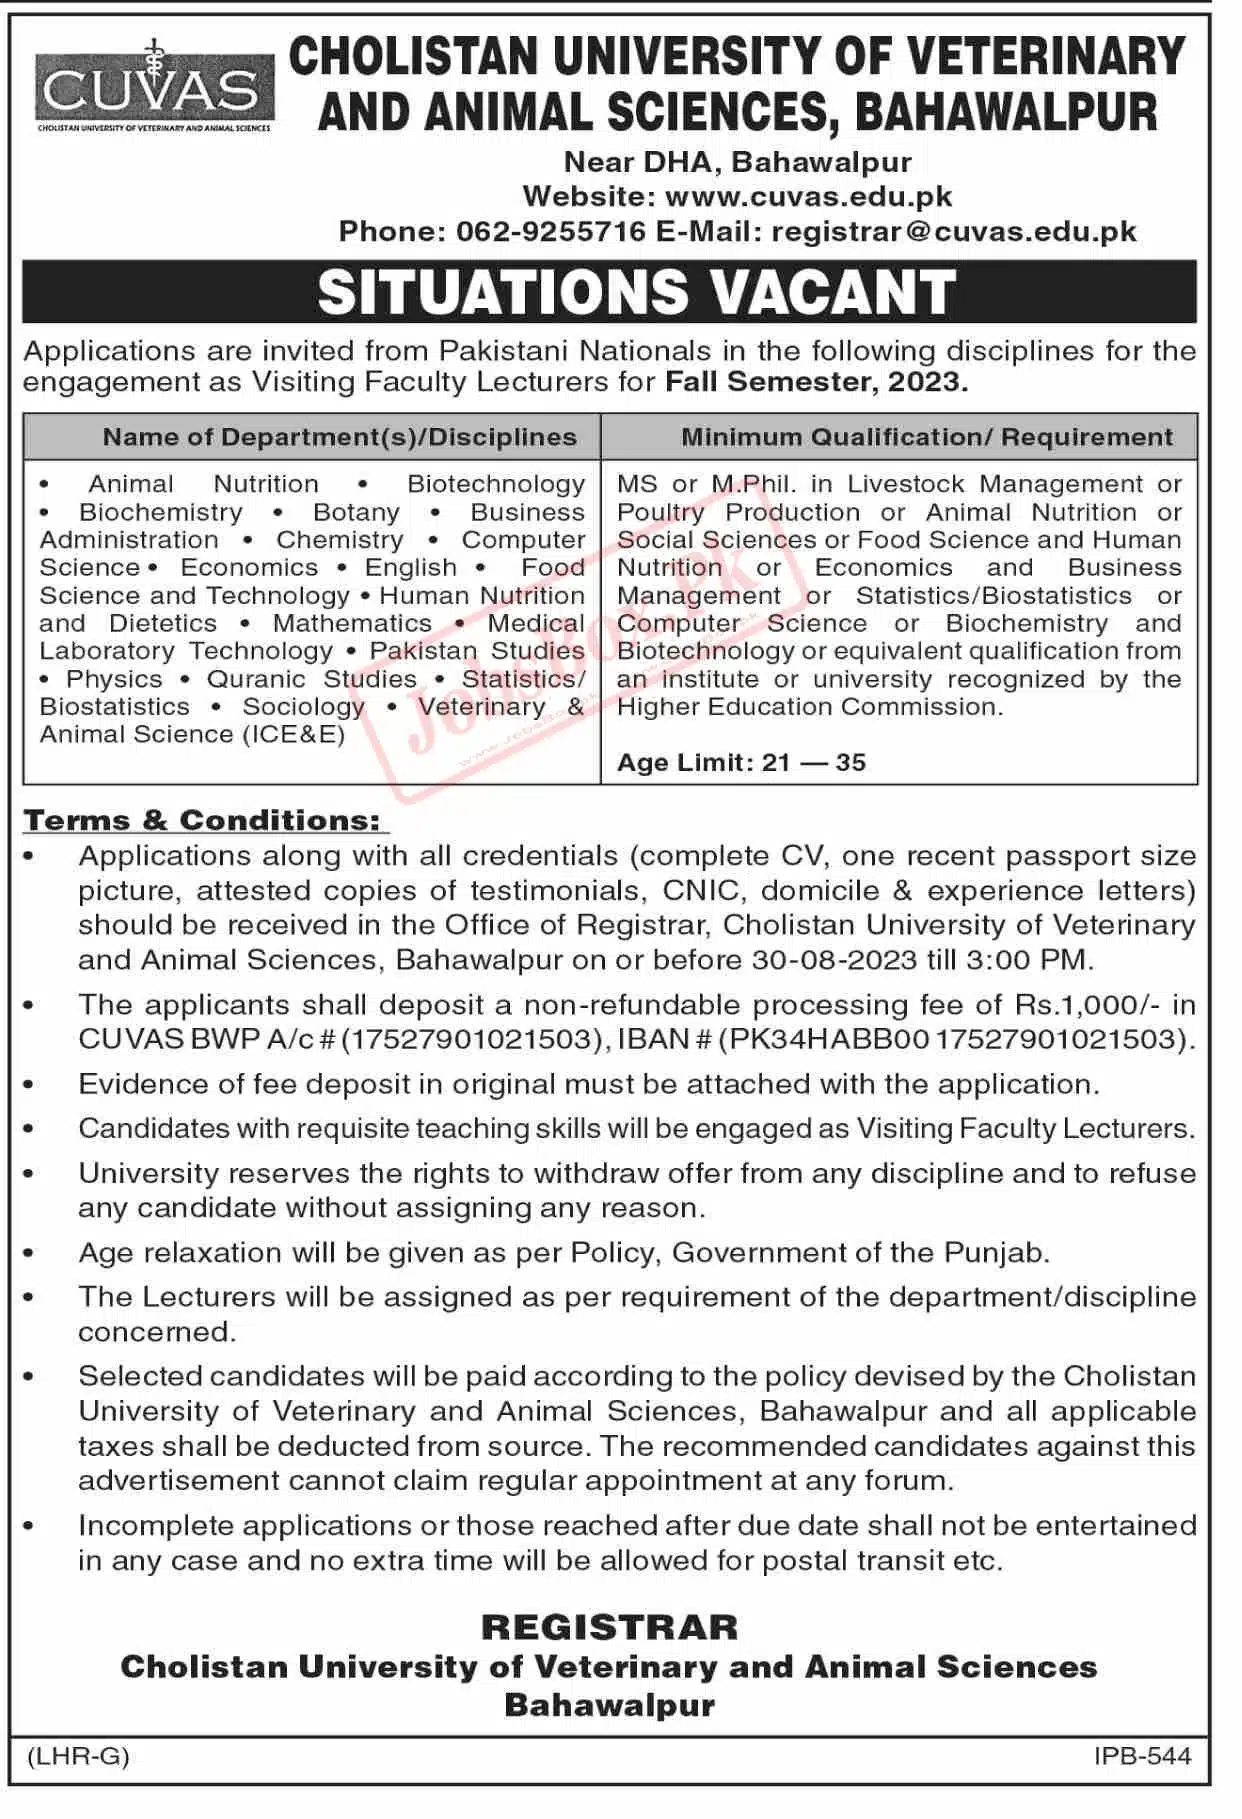 Cholistan University Bahawalpur Jobs 2023 Current Vacancies